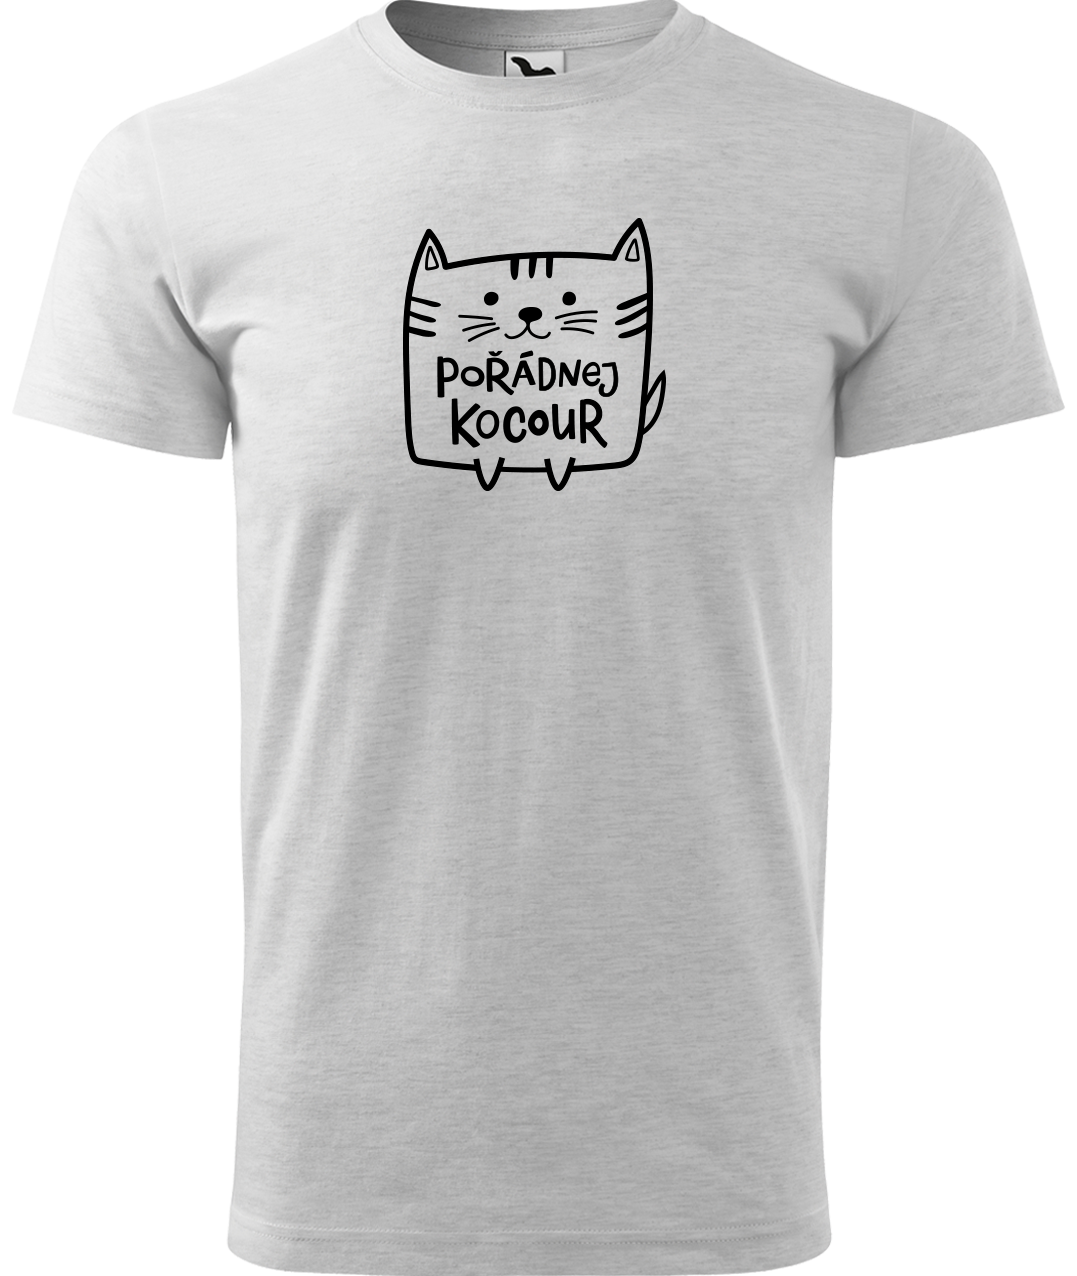 Pánské tričko s kočkou - Pořádnej kocour Velikost: M, Barva: Světle šedý melír (03)